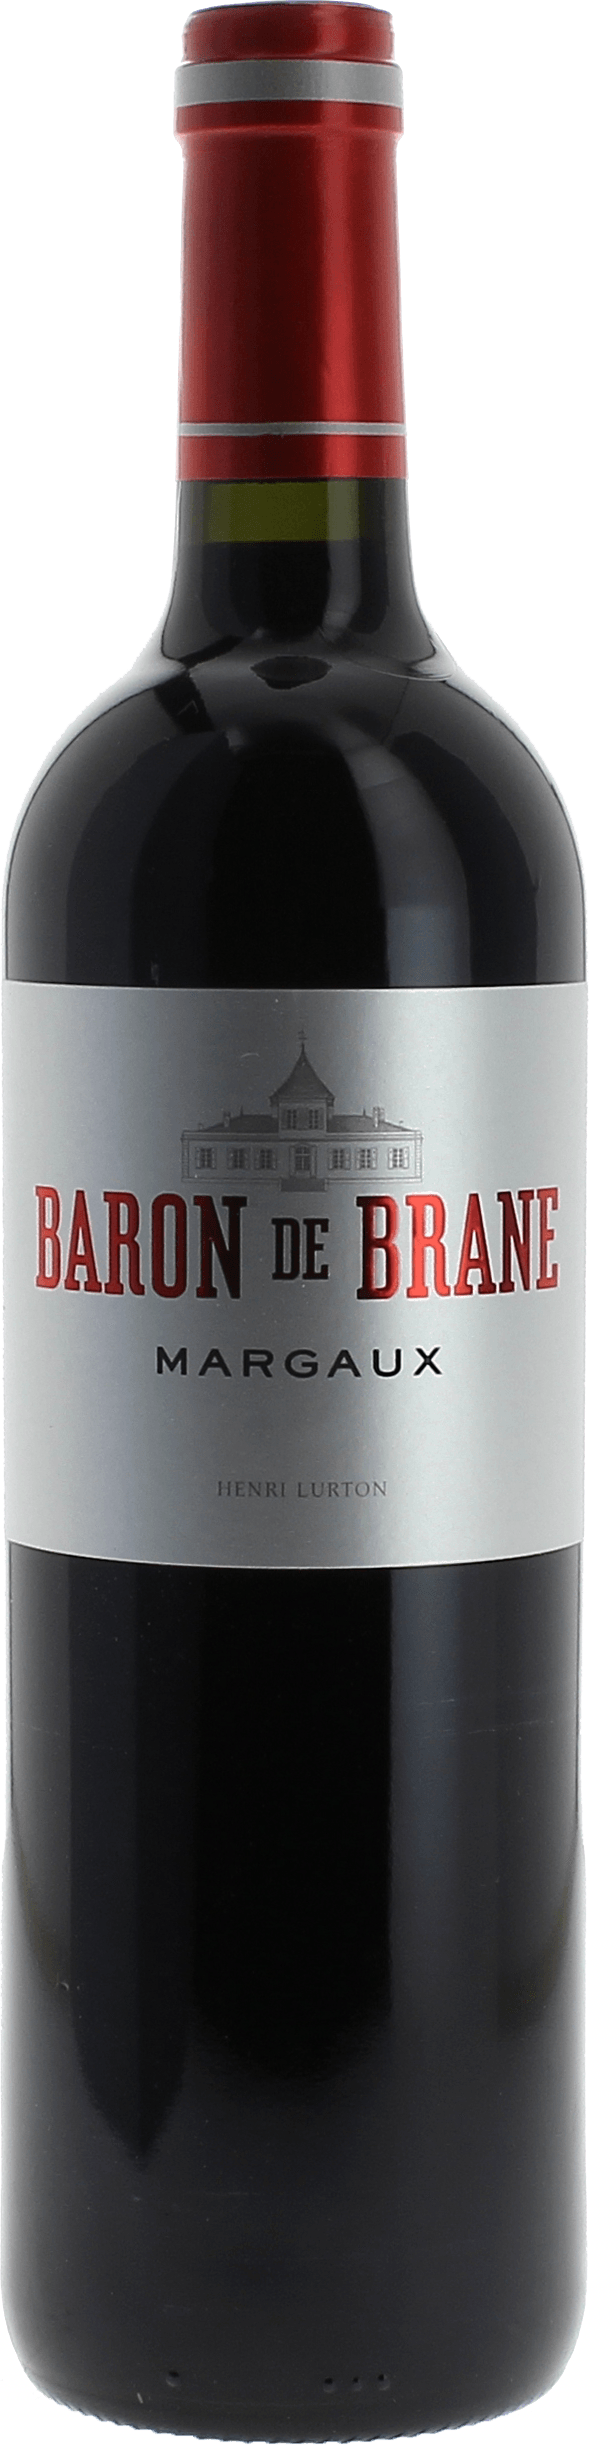 Baron de brane 2020 2nd vin du Chteau Brane Cantenac Margaux, Bordeaux rouge